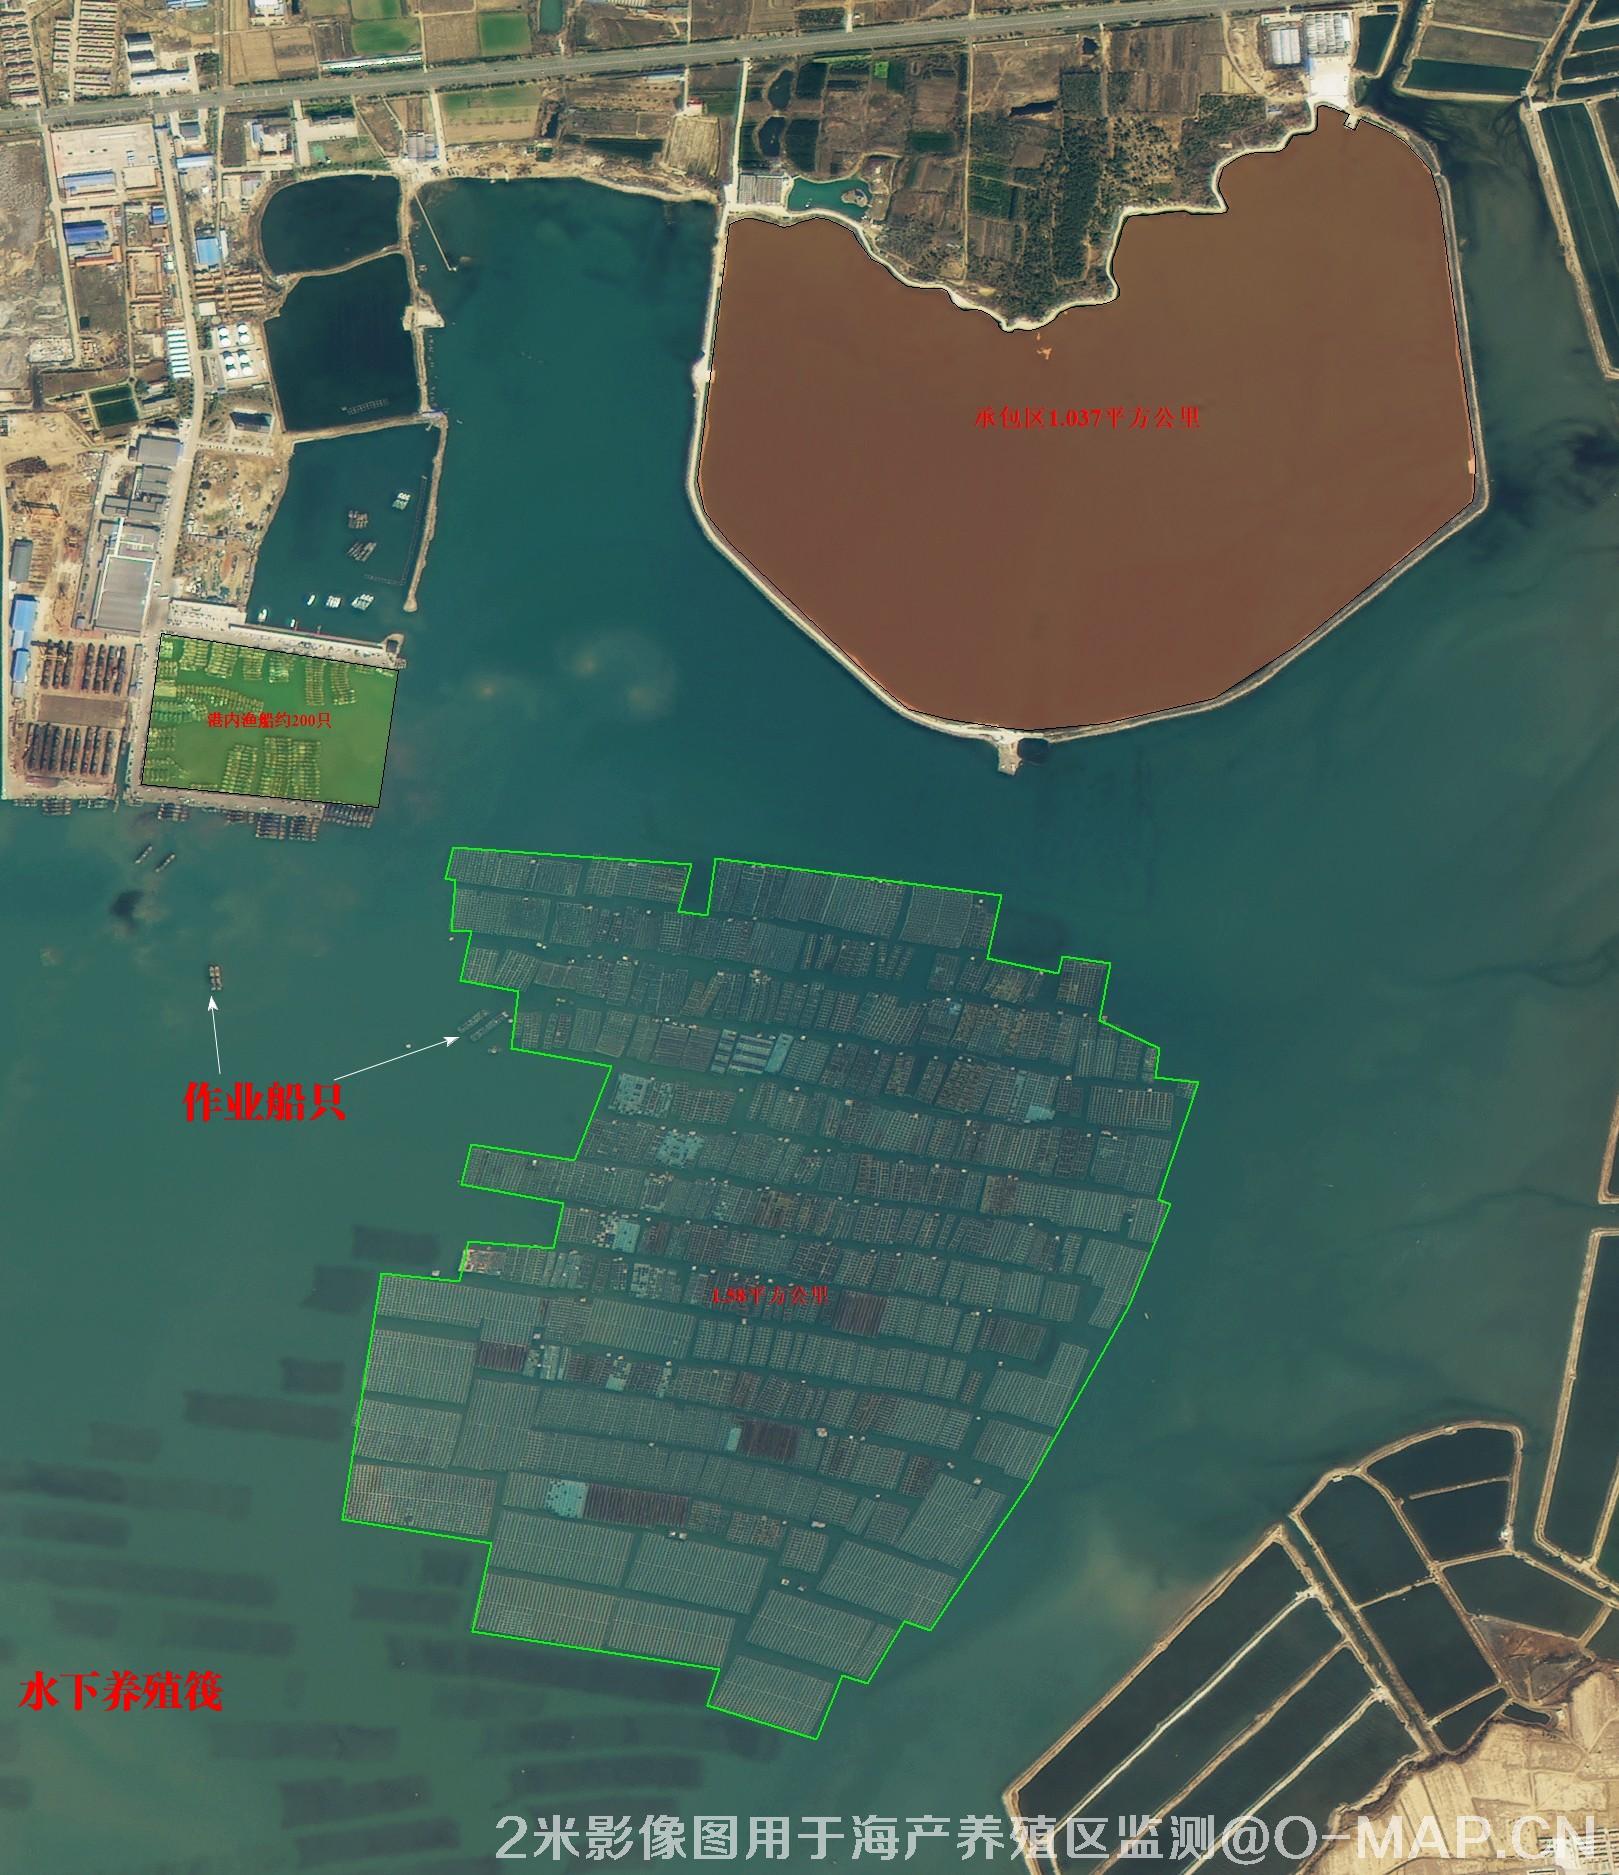 2米影像图拍摄的渔船码头和海产养殖区